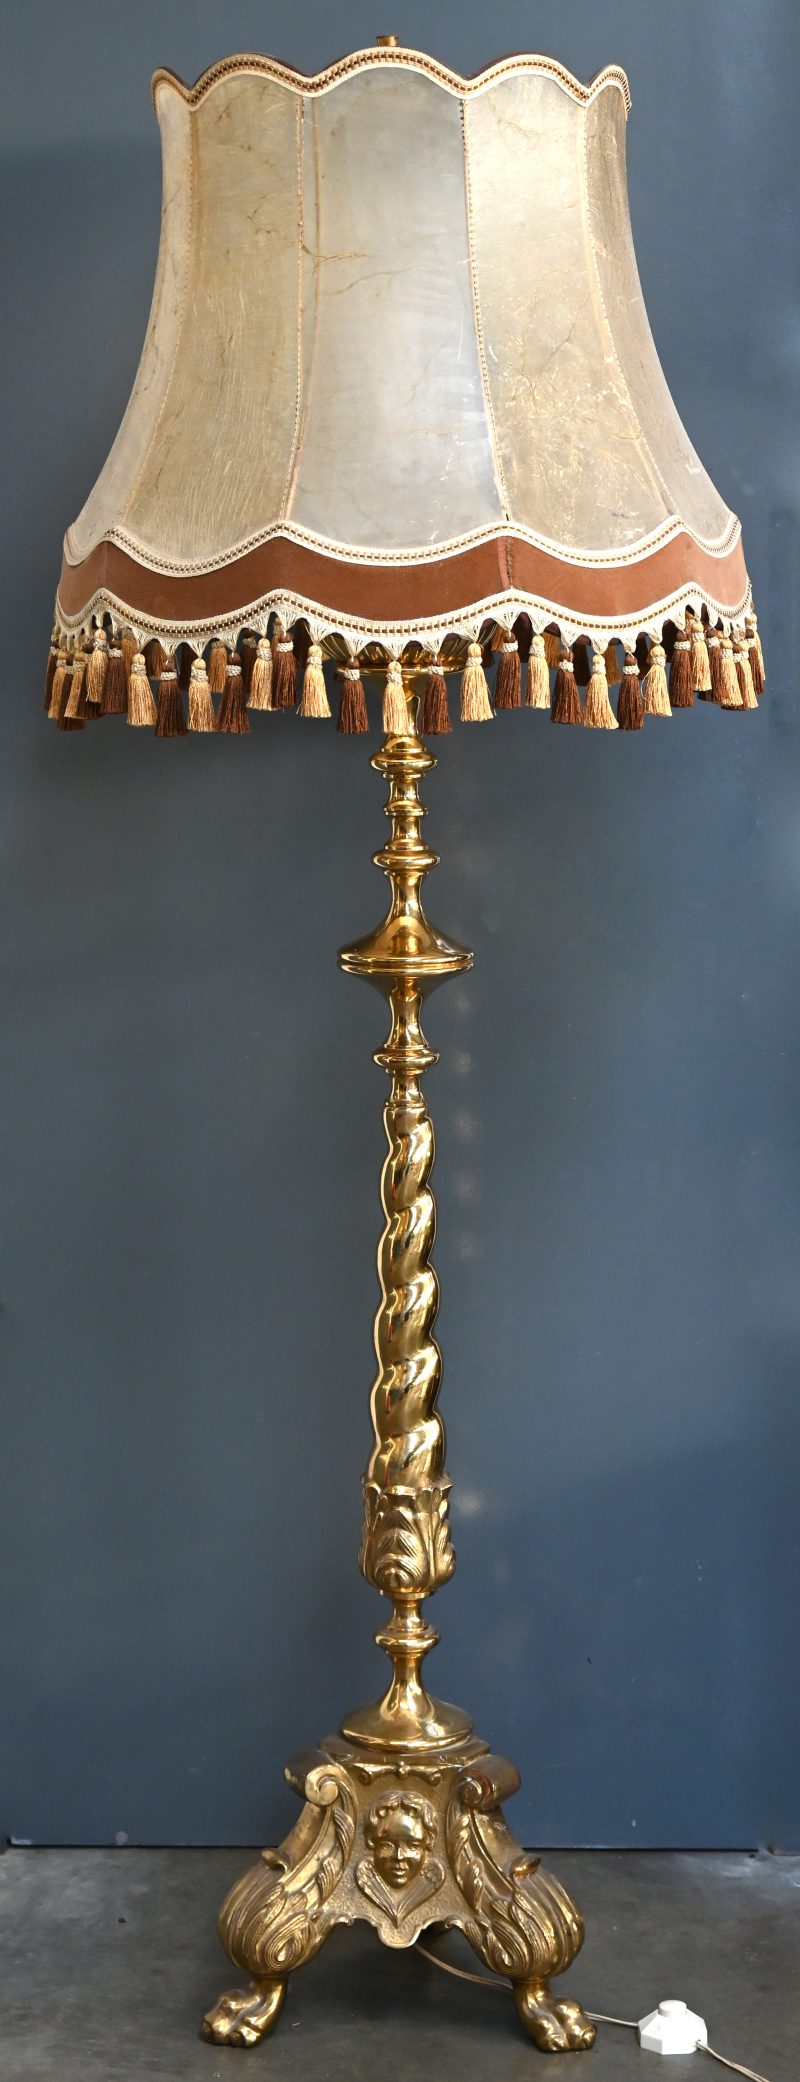 Een grote messing lampadaire met diverse ornamenten en staande op drie poten. Organische elementen en gezichten in het reliëf. Lampenkap uit vermoedelijk varkenshuid met flosjes onderaan.